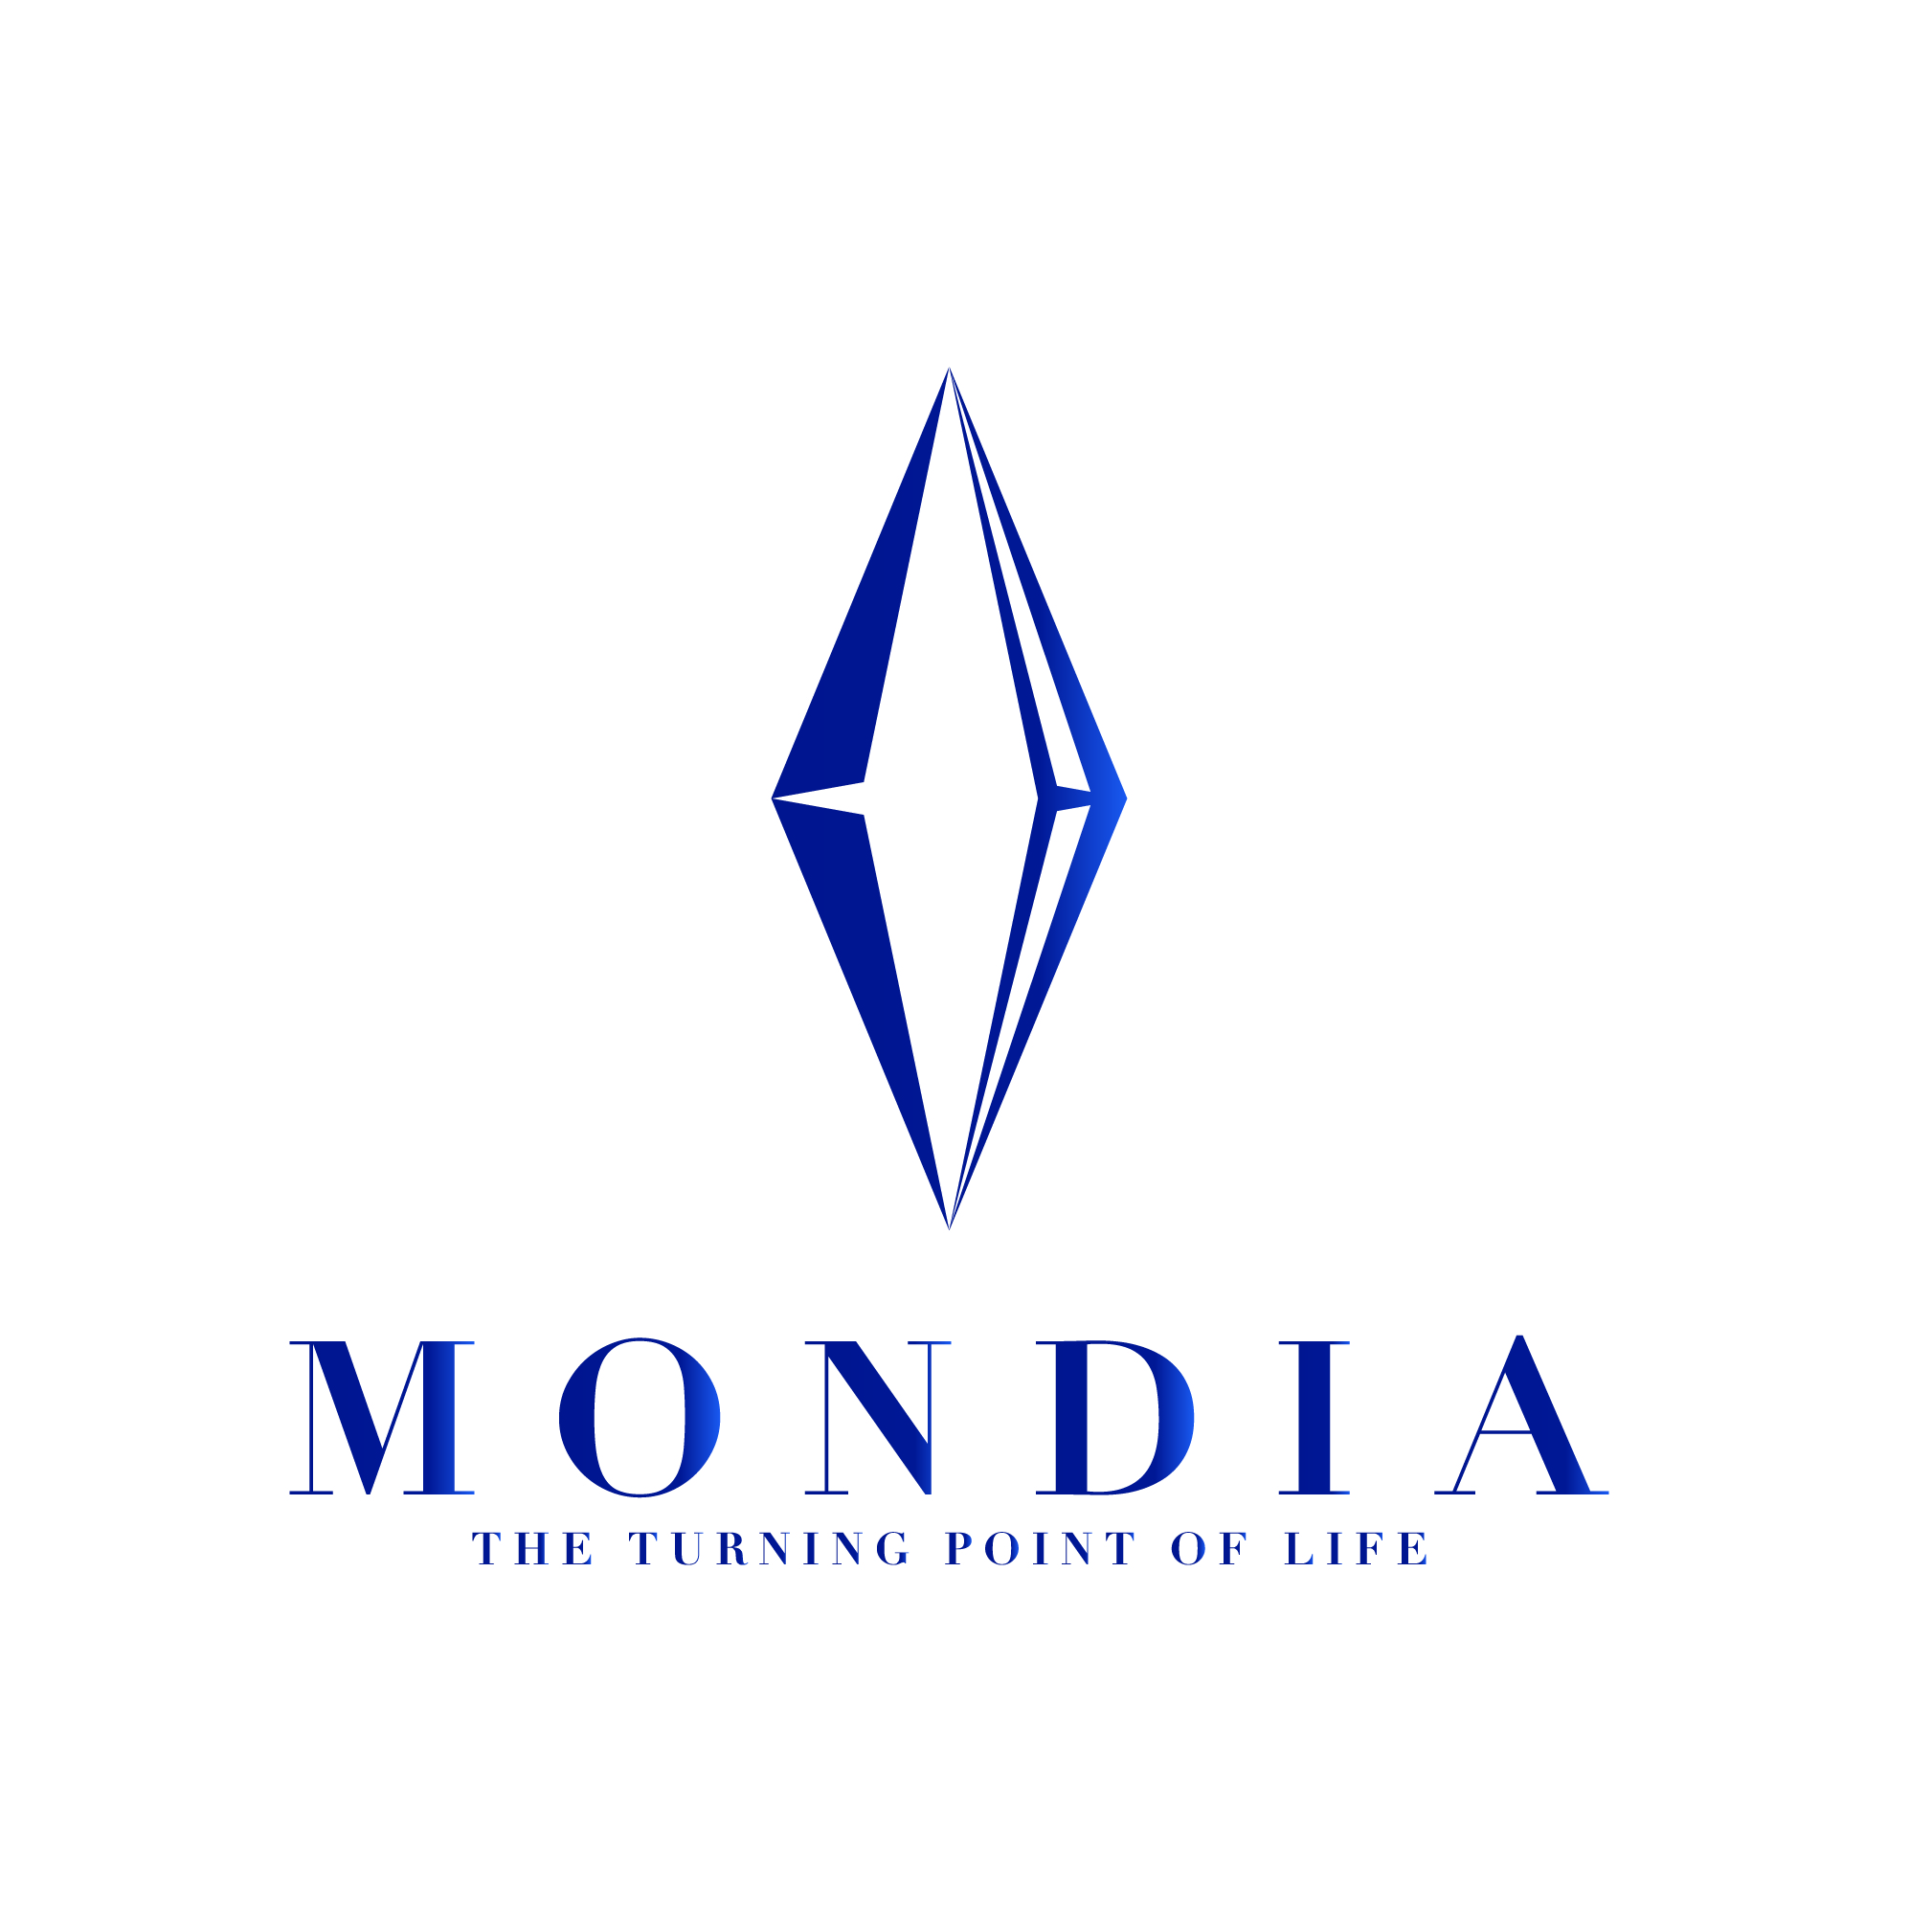 株式会社MONDIA 採用サイト | 愛知県内全域の配管工事・溶接・プラント設備事業